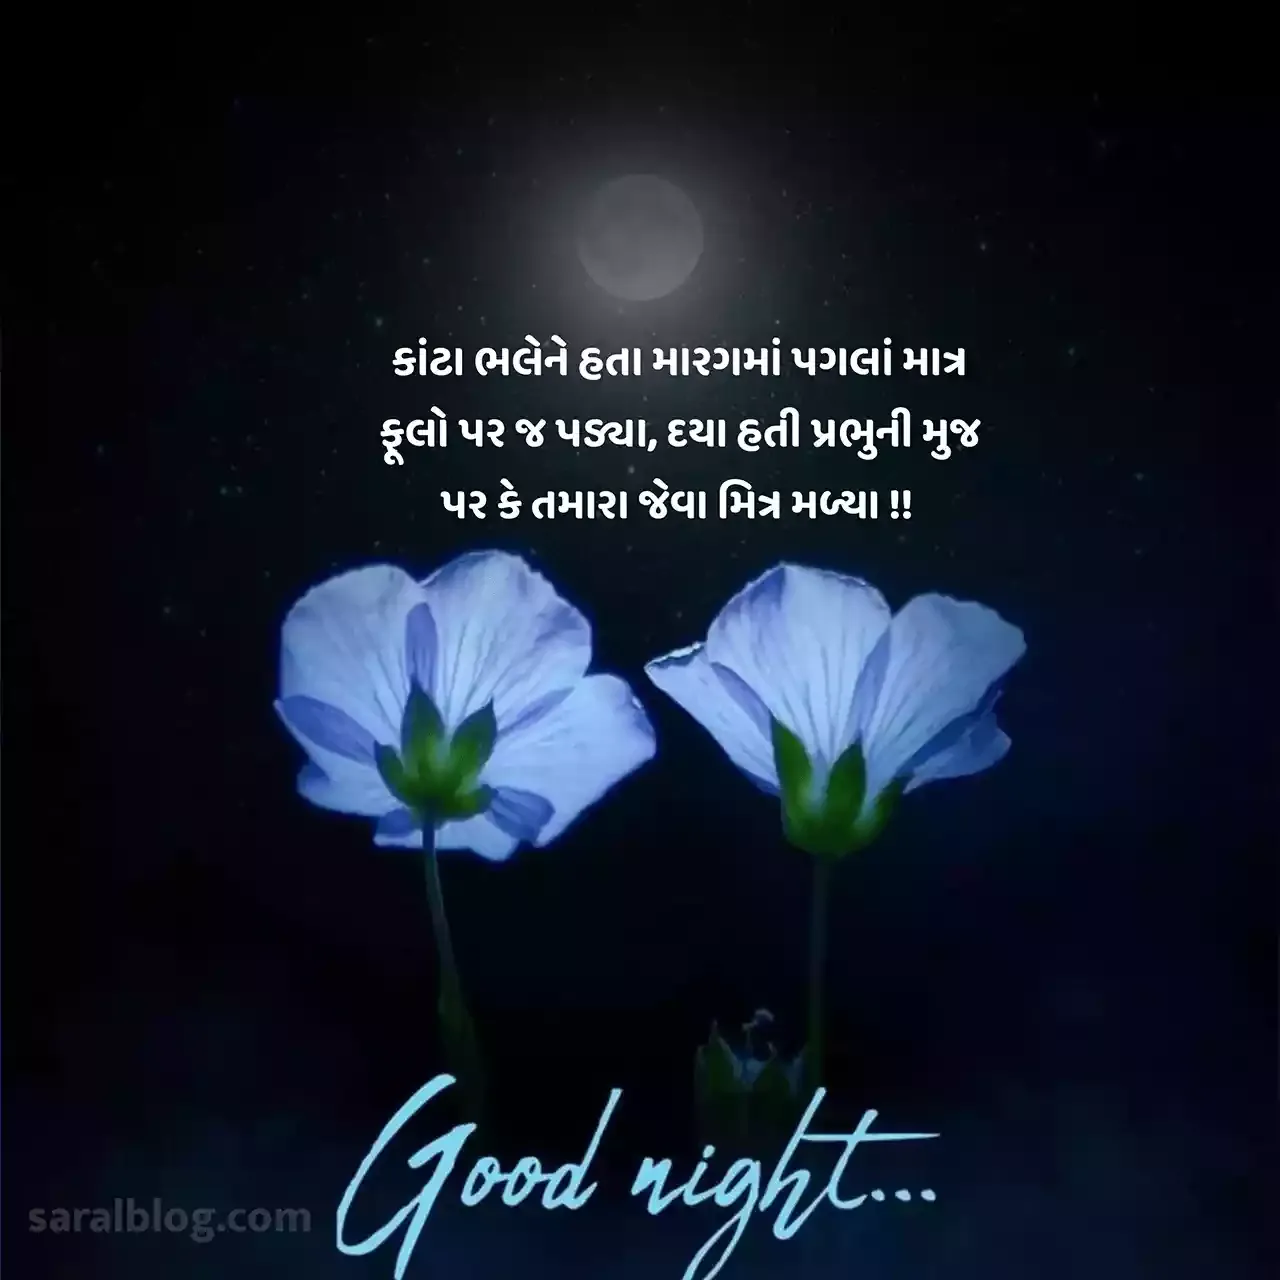 આ પોસ્ટમાં ખાસ તમારા માટે Latest Gujarati Good Night Quotes, Shayari, Suvichar, Text SMS, and Images લઇ આવ્યા છીએ. શુભ રાત્રી સંદેશ sms પણ છે.